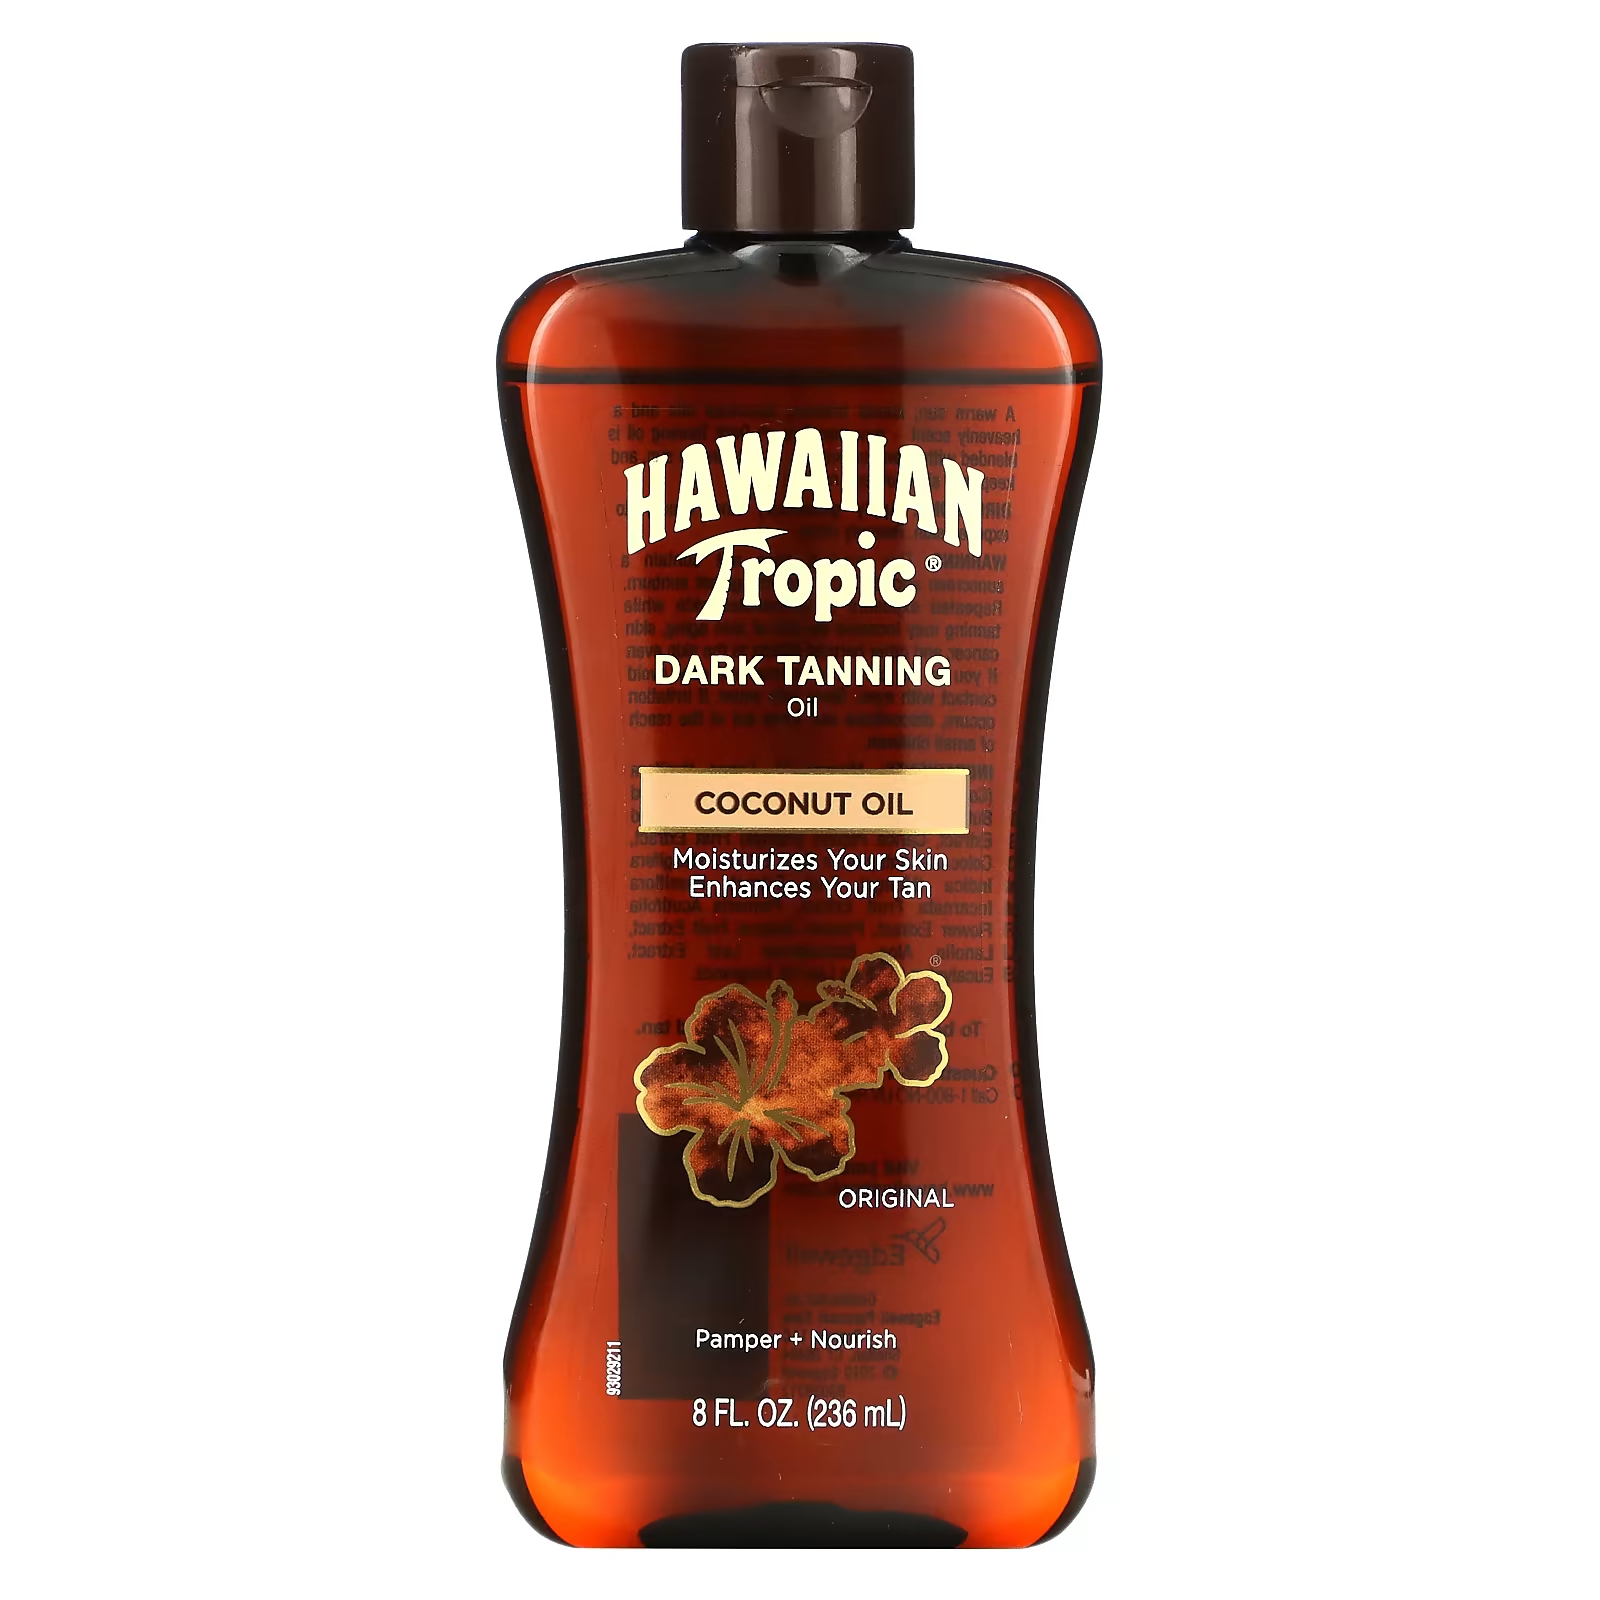 Кокосовое масло Hawaiian Tropic для темного загара, оригинальное, 8 жидких унций (236 мл)